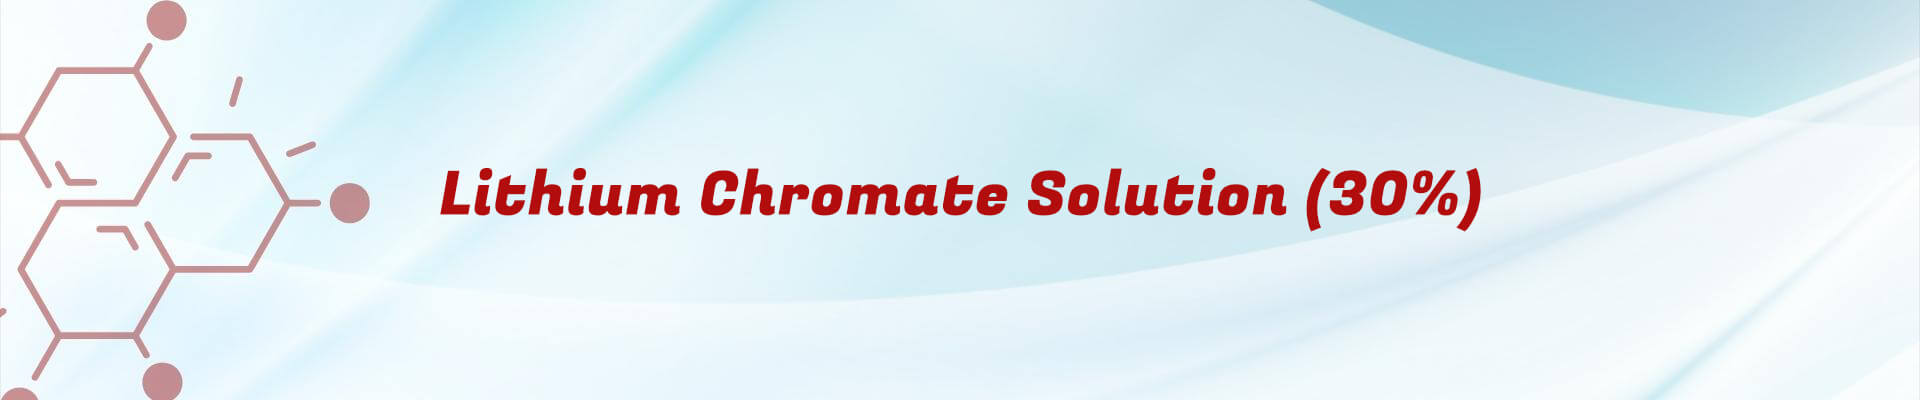 Lithium Chromate Solution